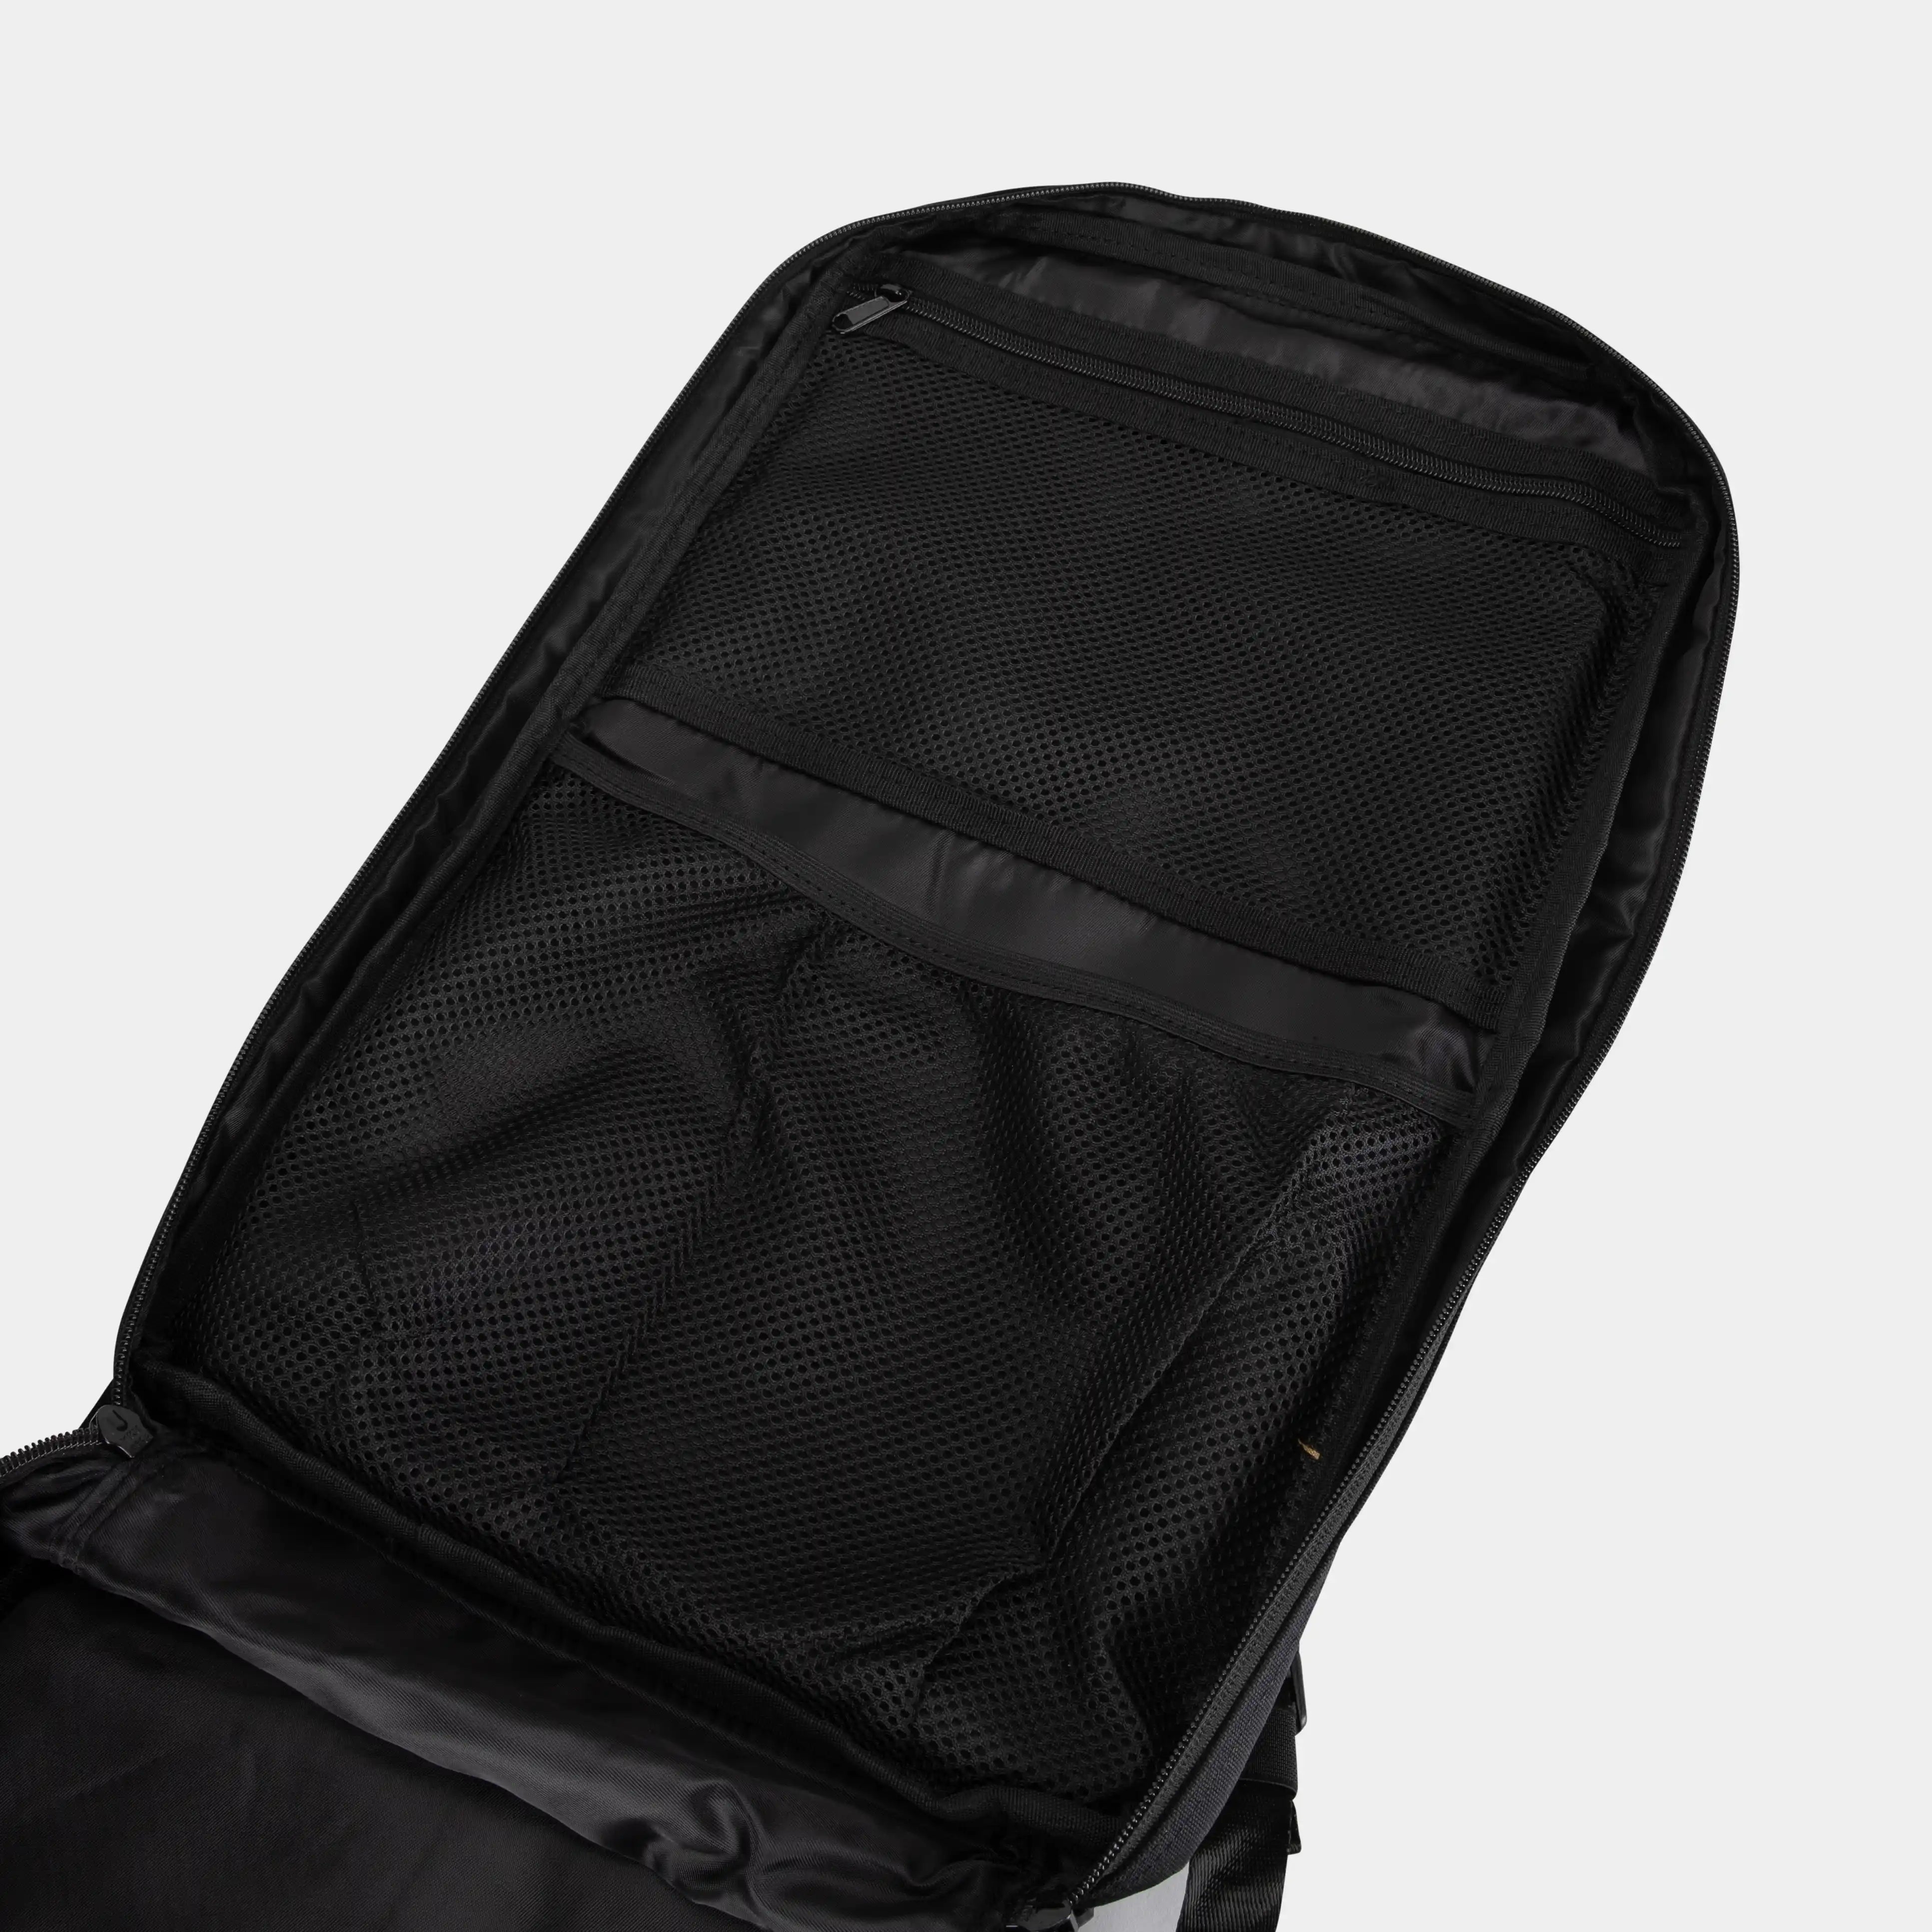 Built for Athletes Backpacks Large Black & Aqua Gym Backpack